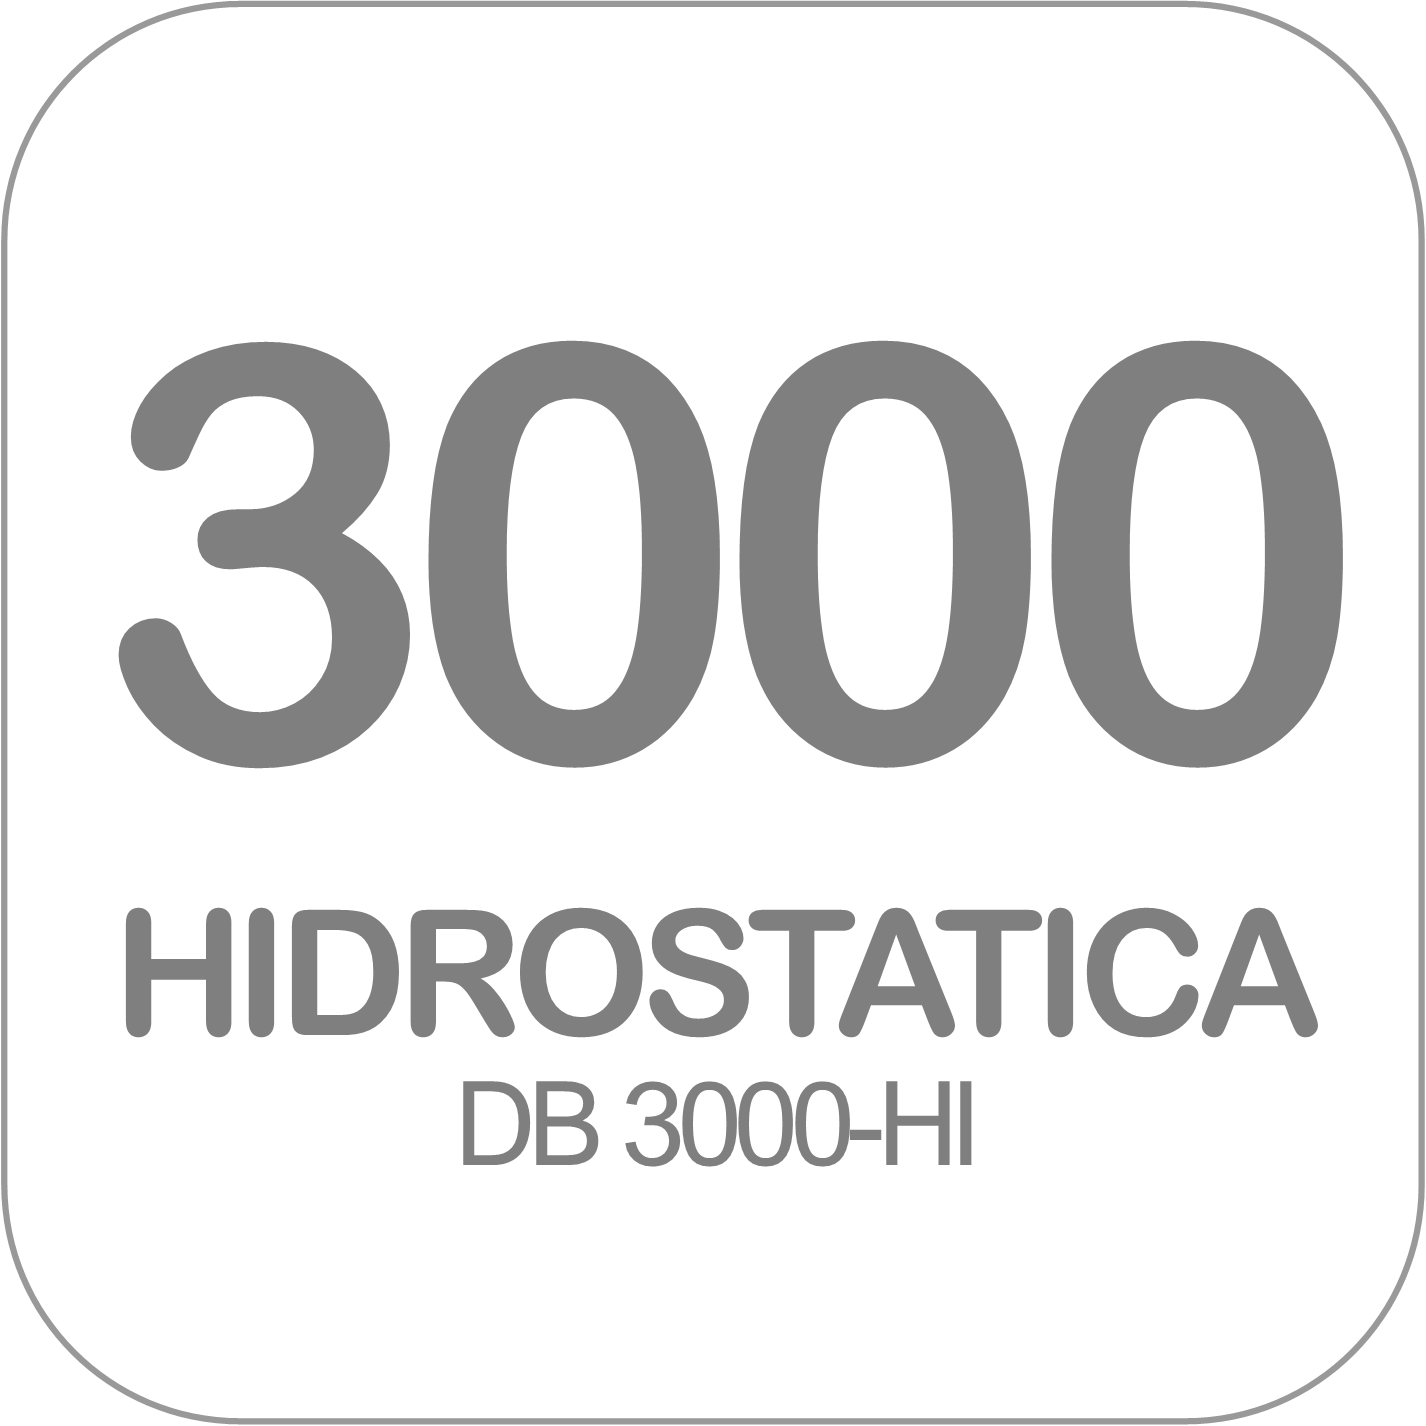 Autohormigonera DB 3000-HI